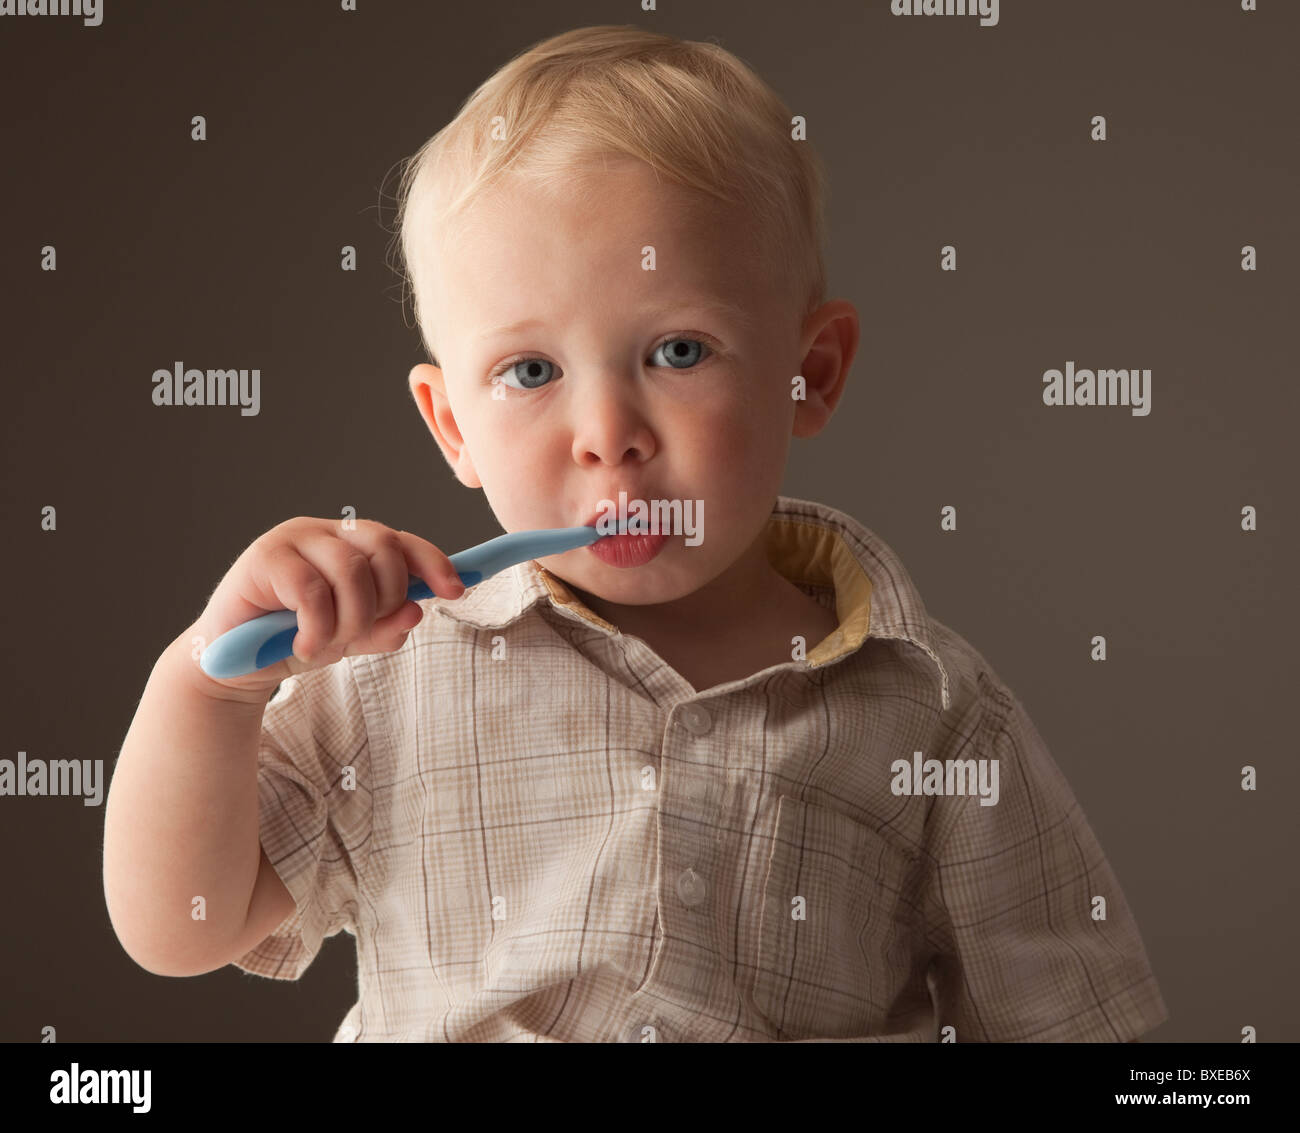 Toddler brushing his teeth Stock Photo